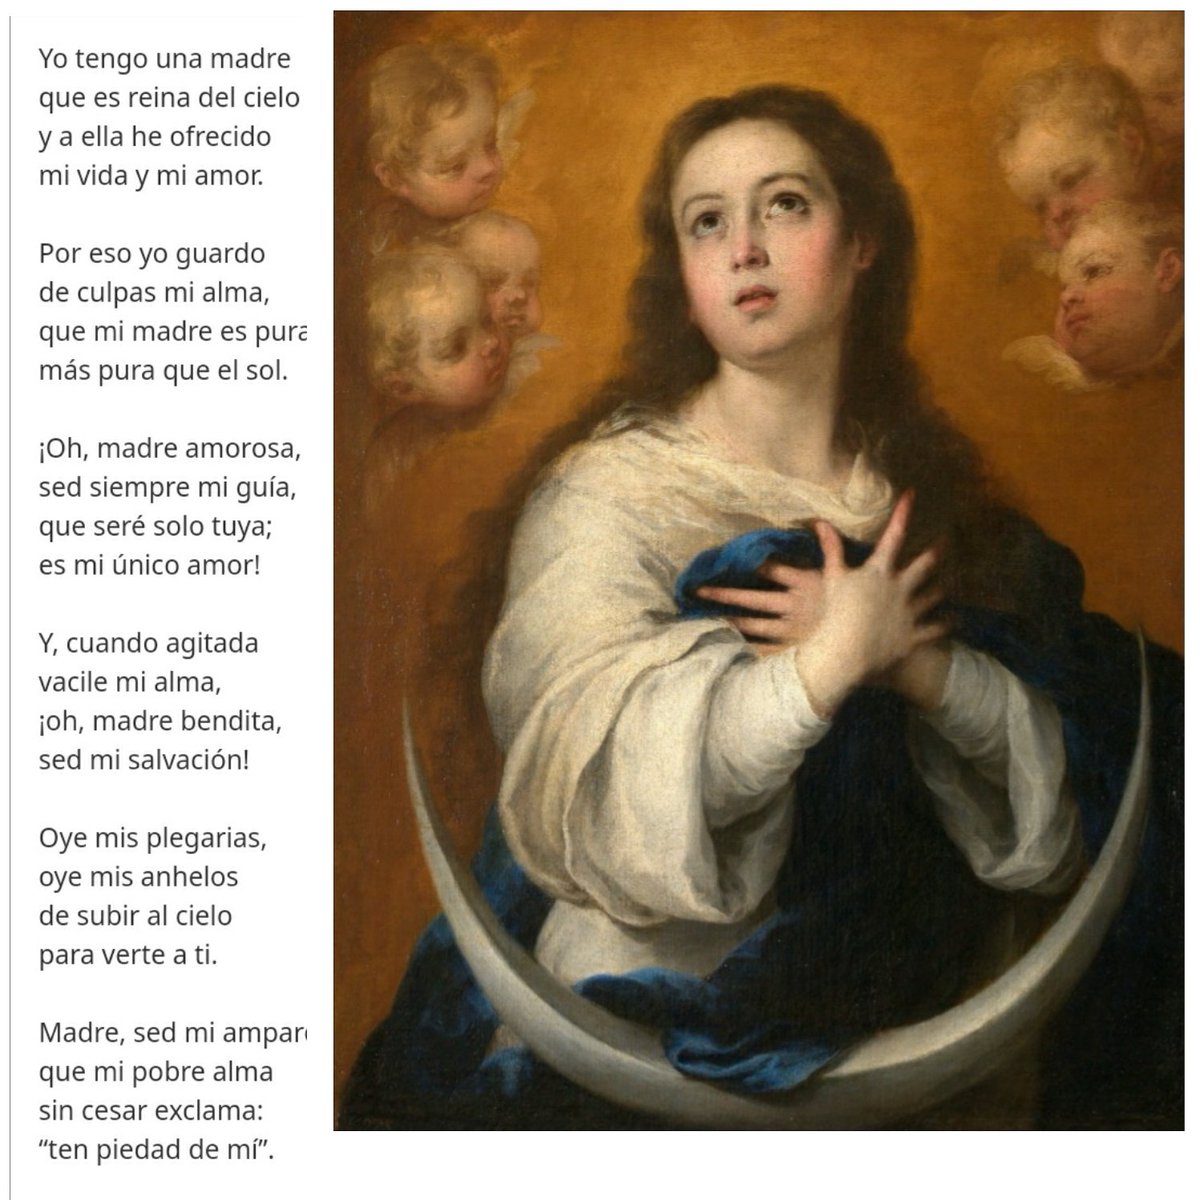 Los últimos días de mayo, alabando a Nuestra Señora:

💙Madre 
🌸Abogada
👑Reina
🤍Inmaculada 
🙏🏻Auxilio

VENID Y VAMOS TODOS CON FLORES A MARÍA 💐💐

#MayoMesDeMaría
#VivaMaría
#ConFloresAMaría
#MesDeMaría
#MaríaInmaculada

💐💐VENID, VENID, QUE MADRE NUESTRA ES.